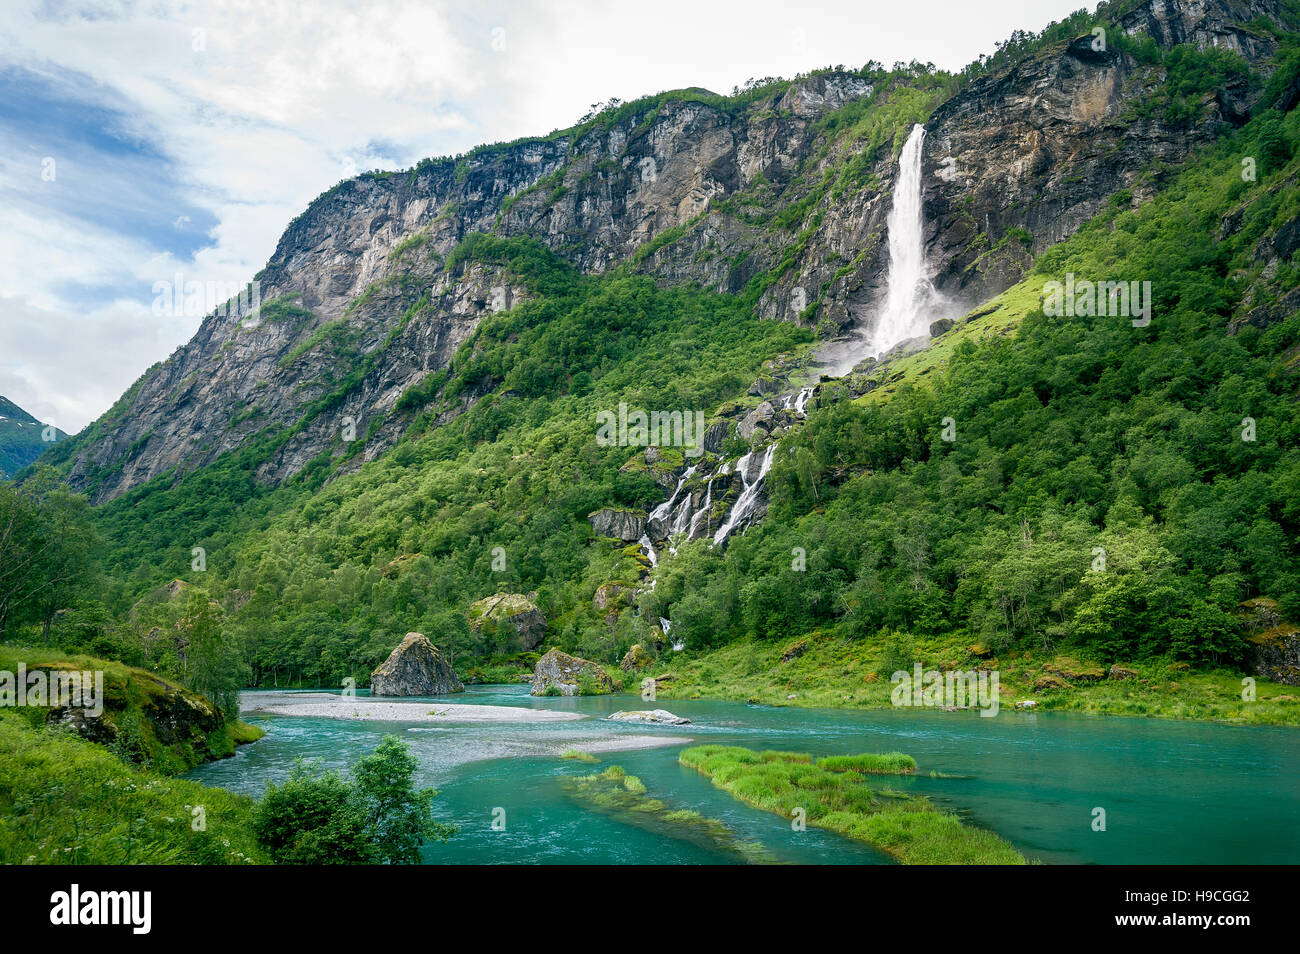 La Norvège paysage avec chute d'eau dans le canyon de la rivière de montagne. Banque D'Images